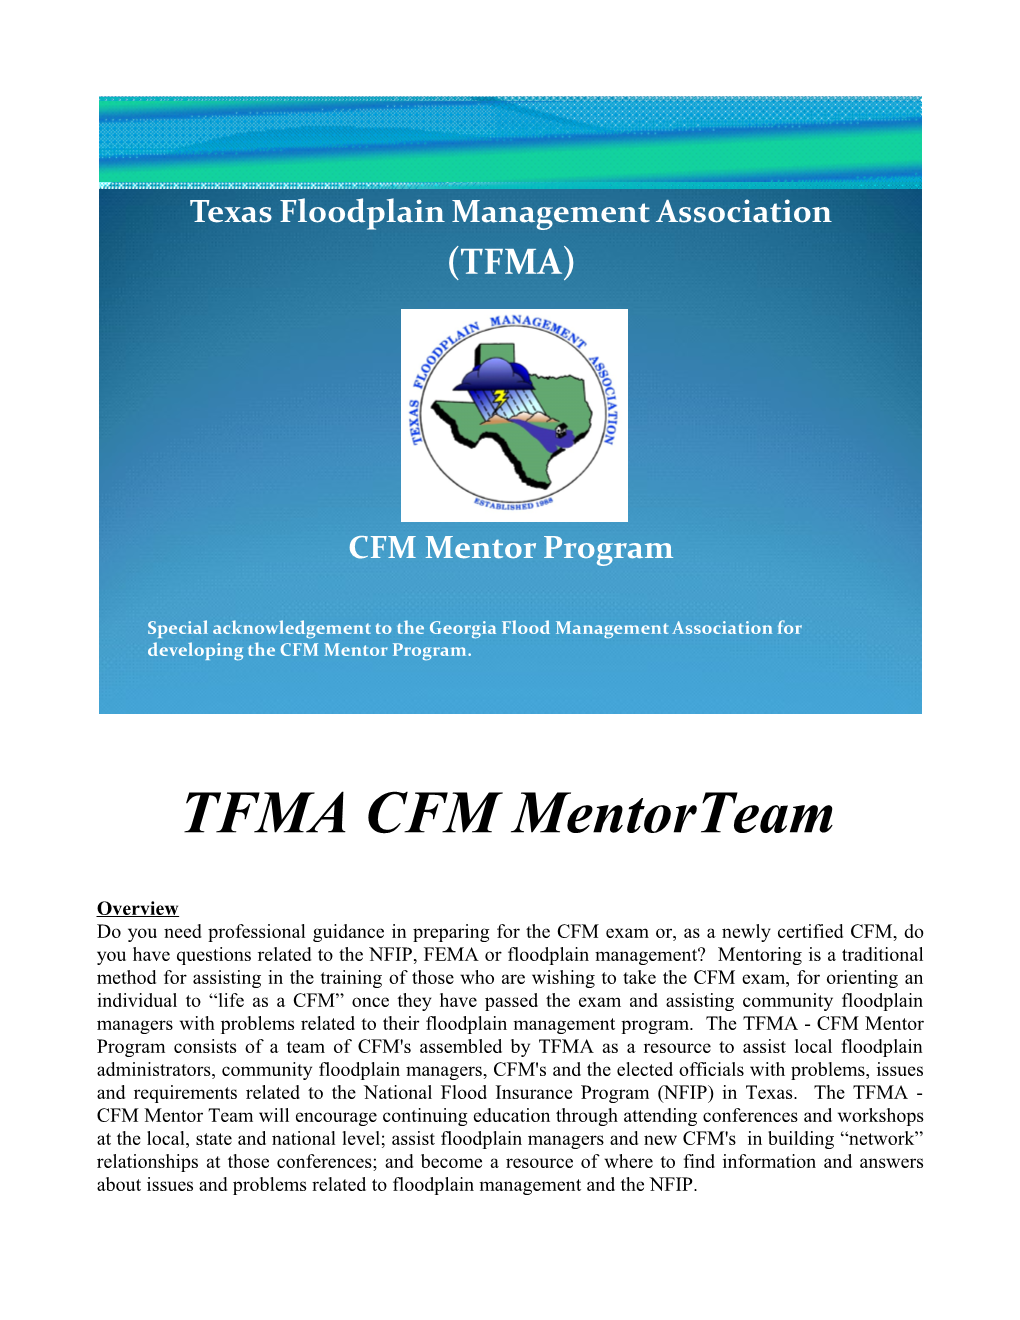 TFMA CFM Mentorteam